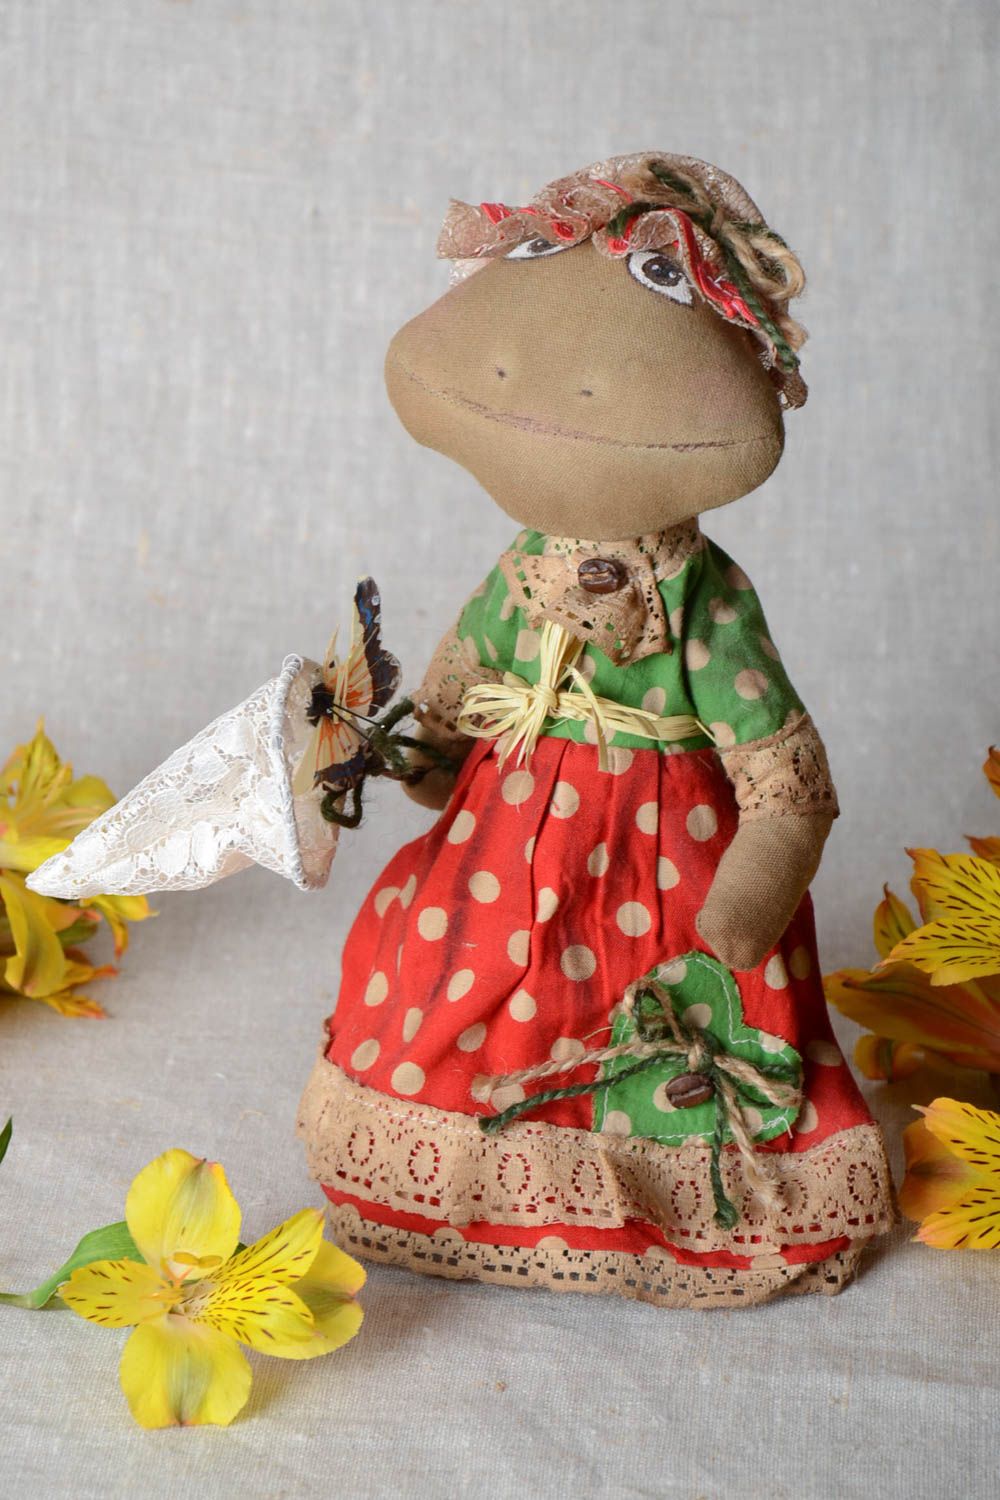 Ароматная кукла лягушка из хлопка с запахом кофе и ванили пошитая вручную фото 1